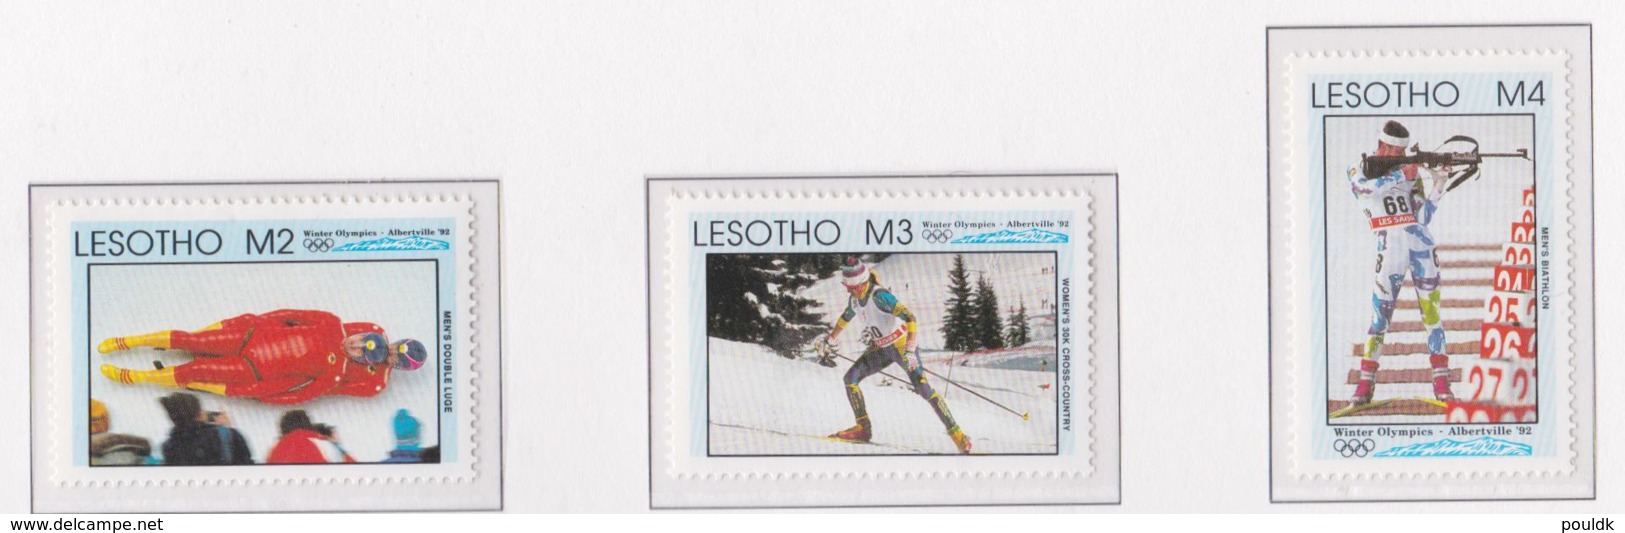 Lesotho 1992 Olympic Games Albertville MNH/** (H53) - Hiver 1992: Albertville